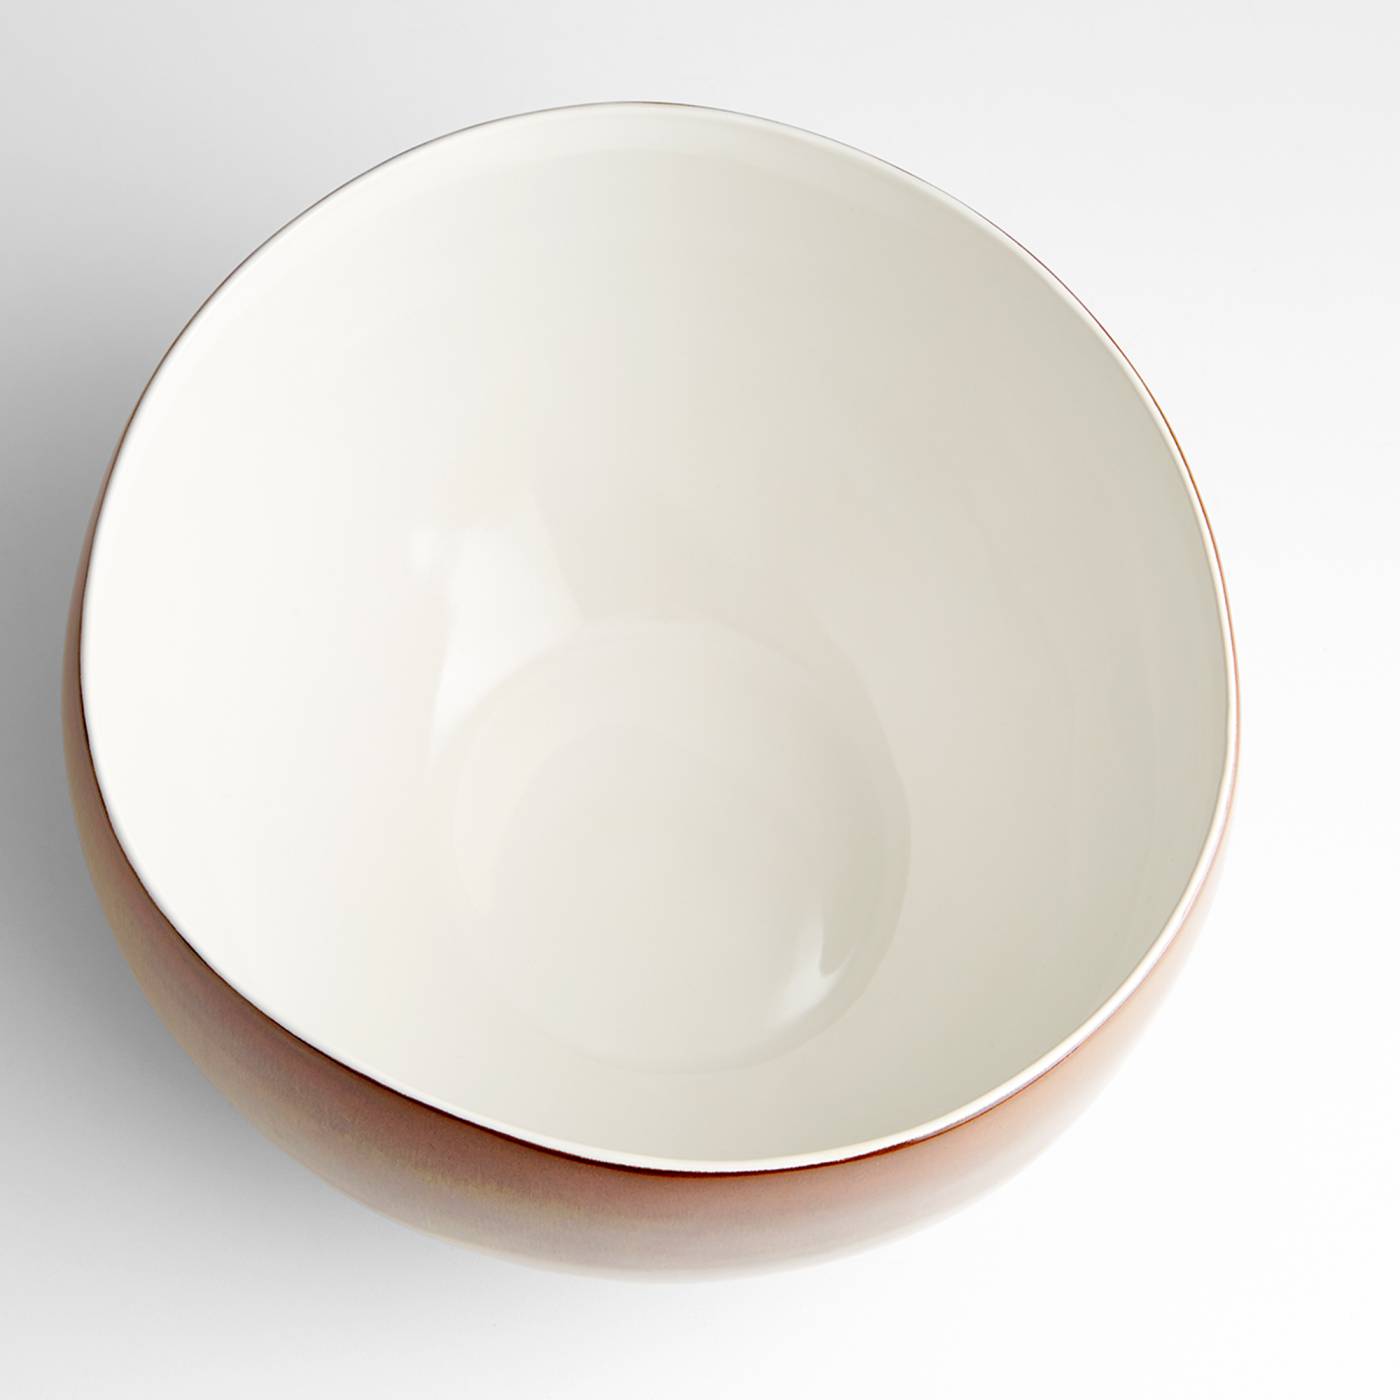 Marbled Dreams Bowl By Cyan Design | Cyan Design | Modishstore - 4